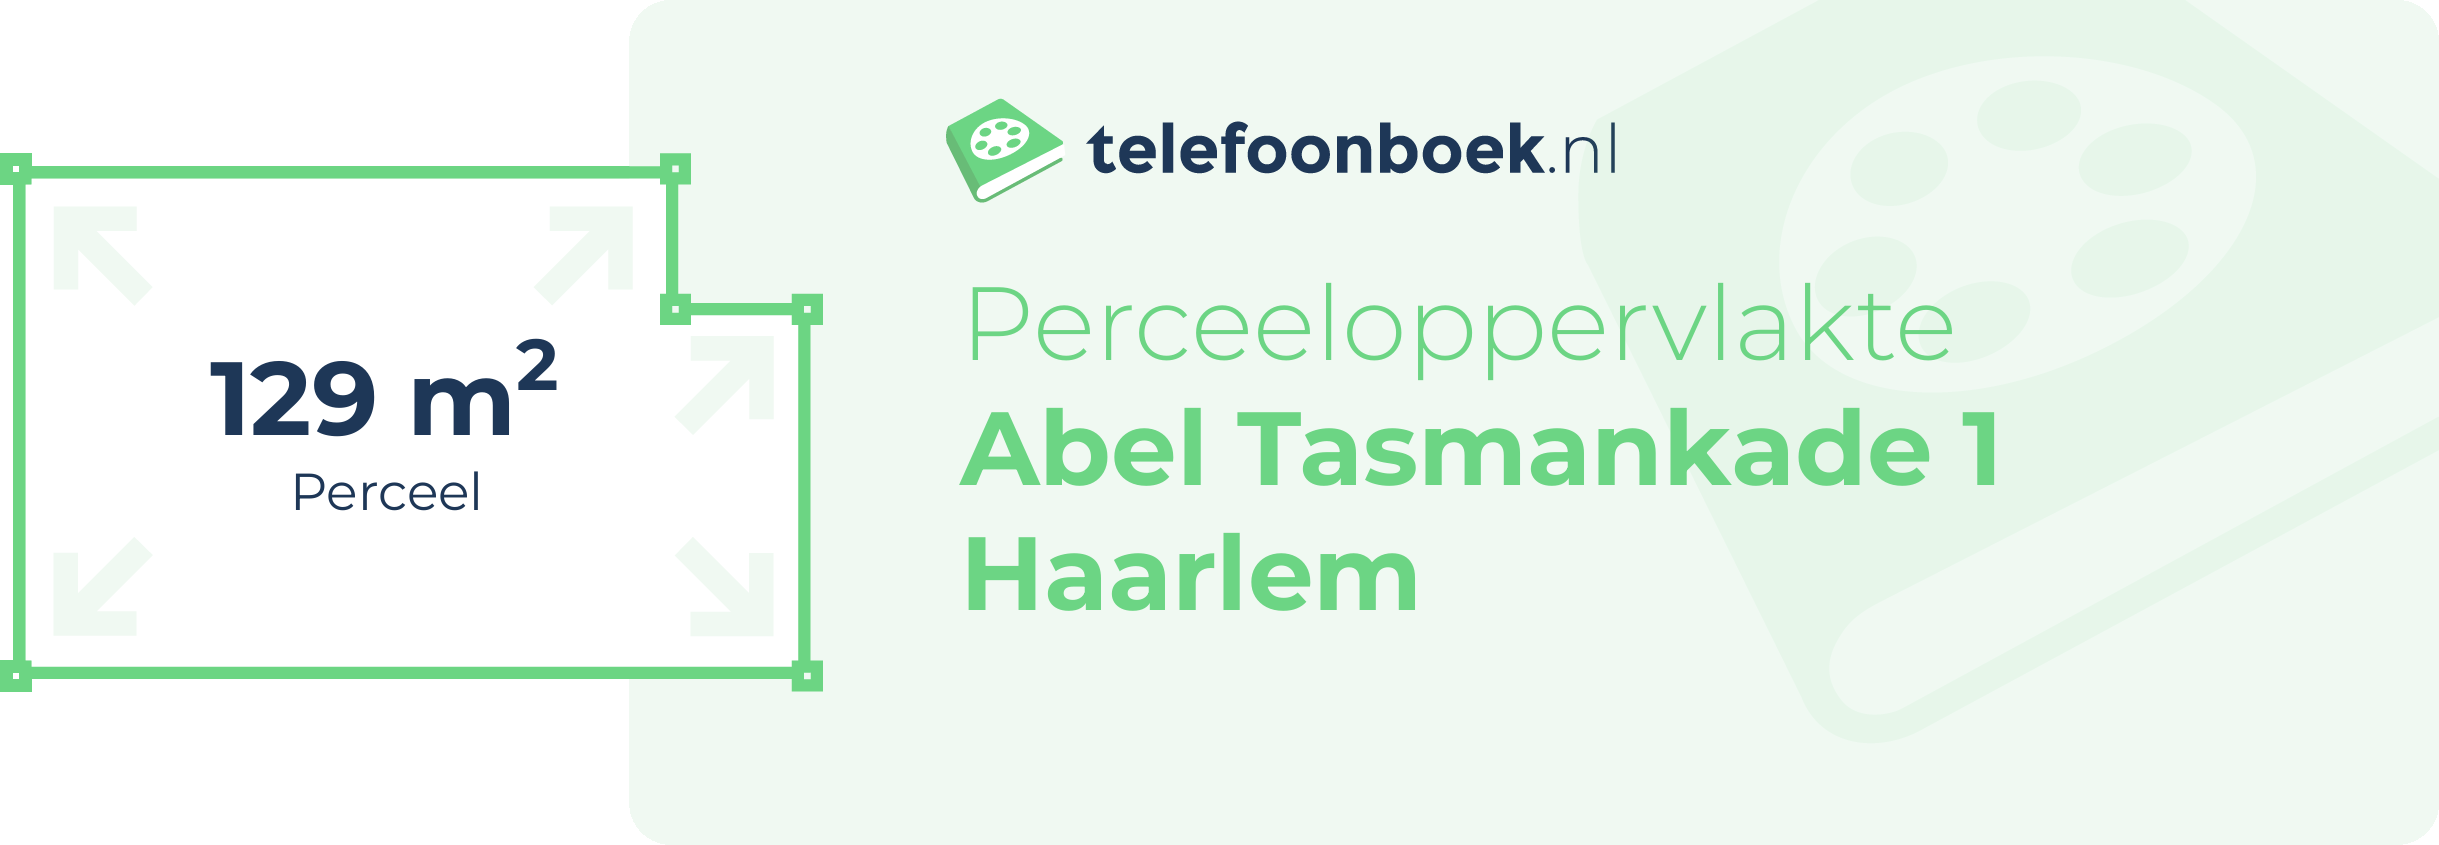 Perceeloppervlakte Abel Tasmankade 1 Haarlem